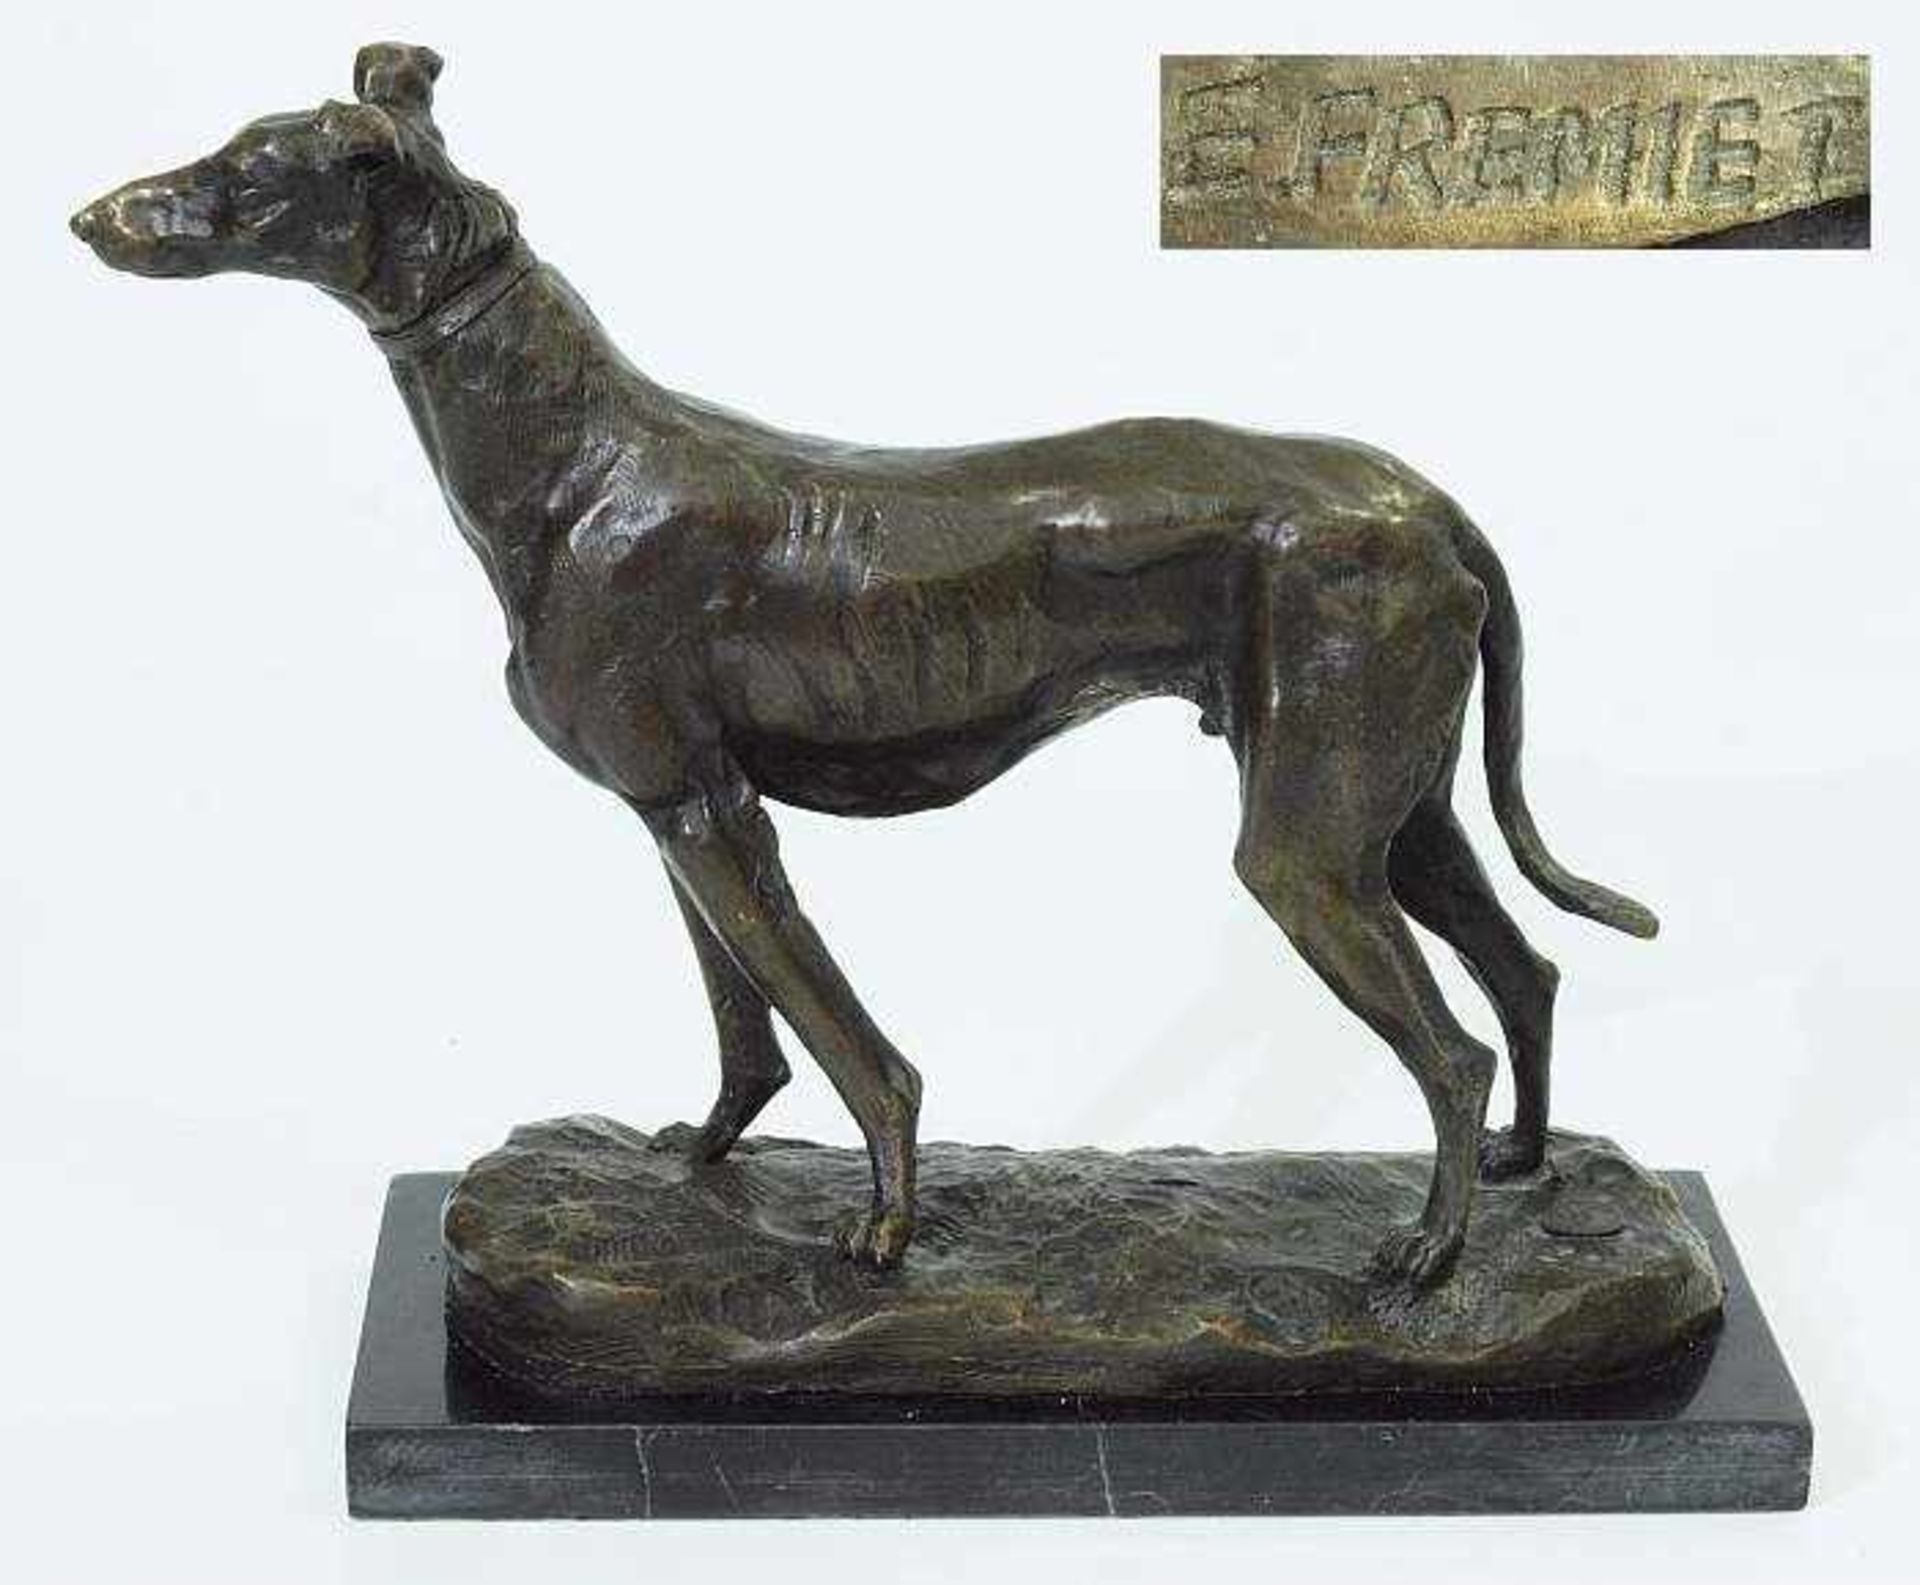 Wachsamer stehender Jagdhund. Wachsamer stehender Jagdhund, 20. Jahrhundert. Bronze, dunkel